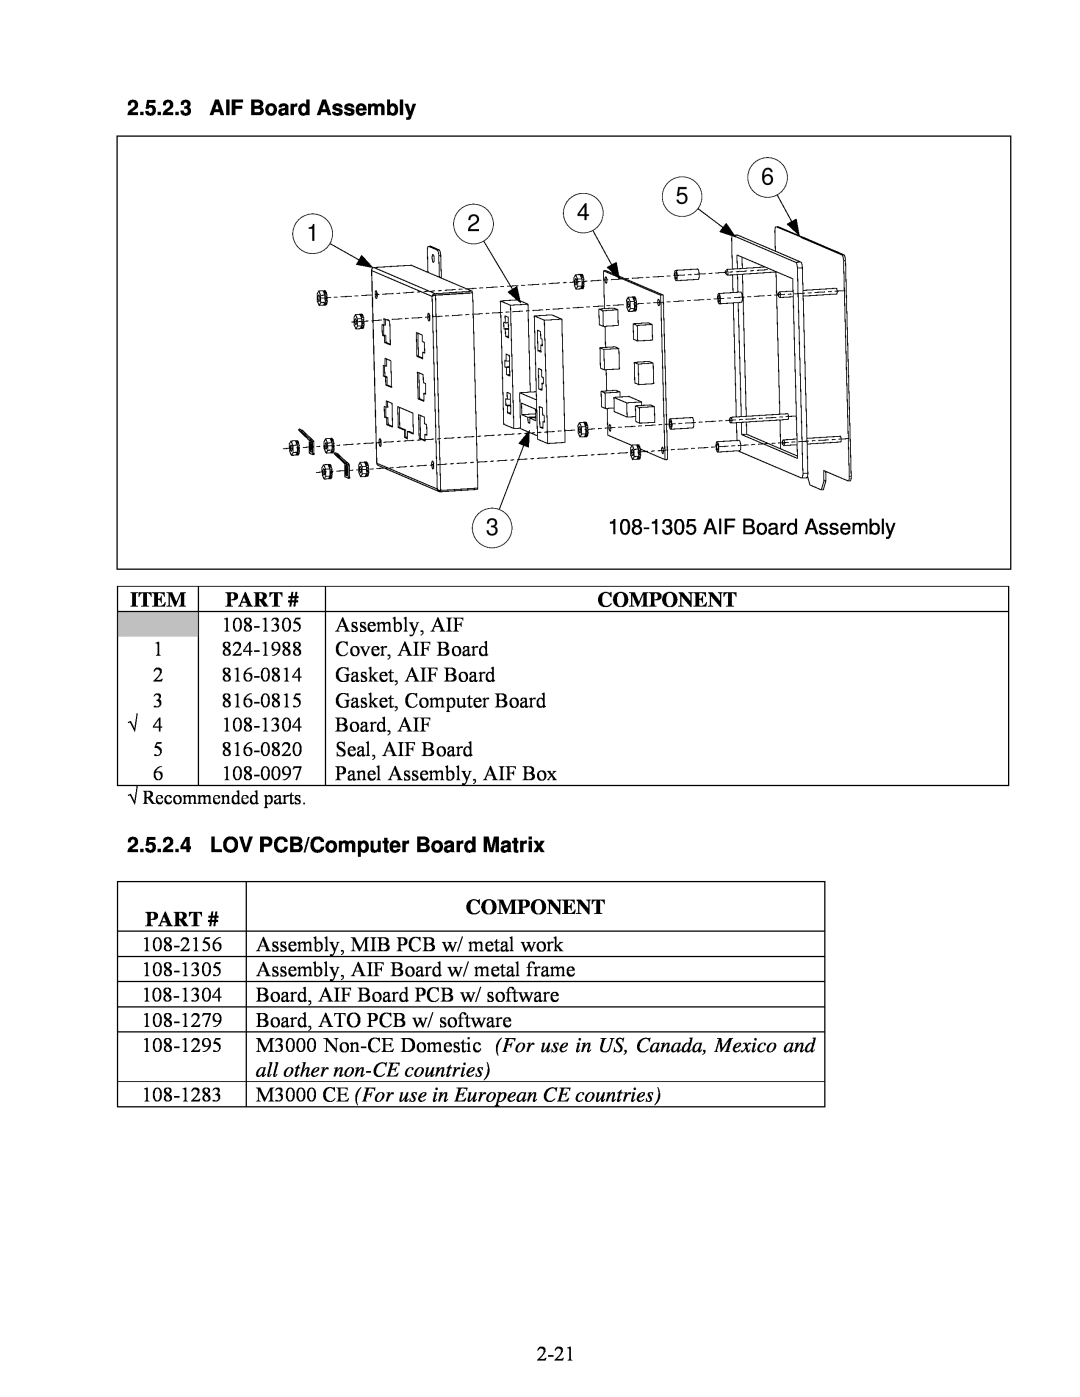 Frymaster BIELA14 manual AIF Board Assembly, LOV PCB/Computer Board Matrix, Item Part #, Component 